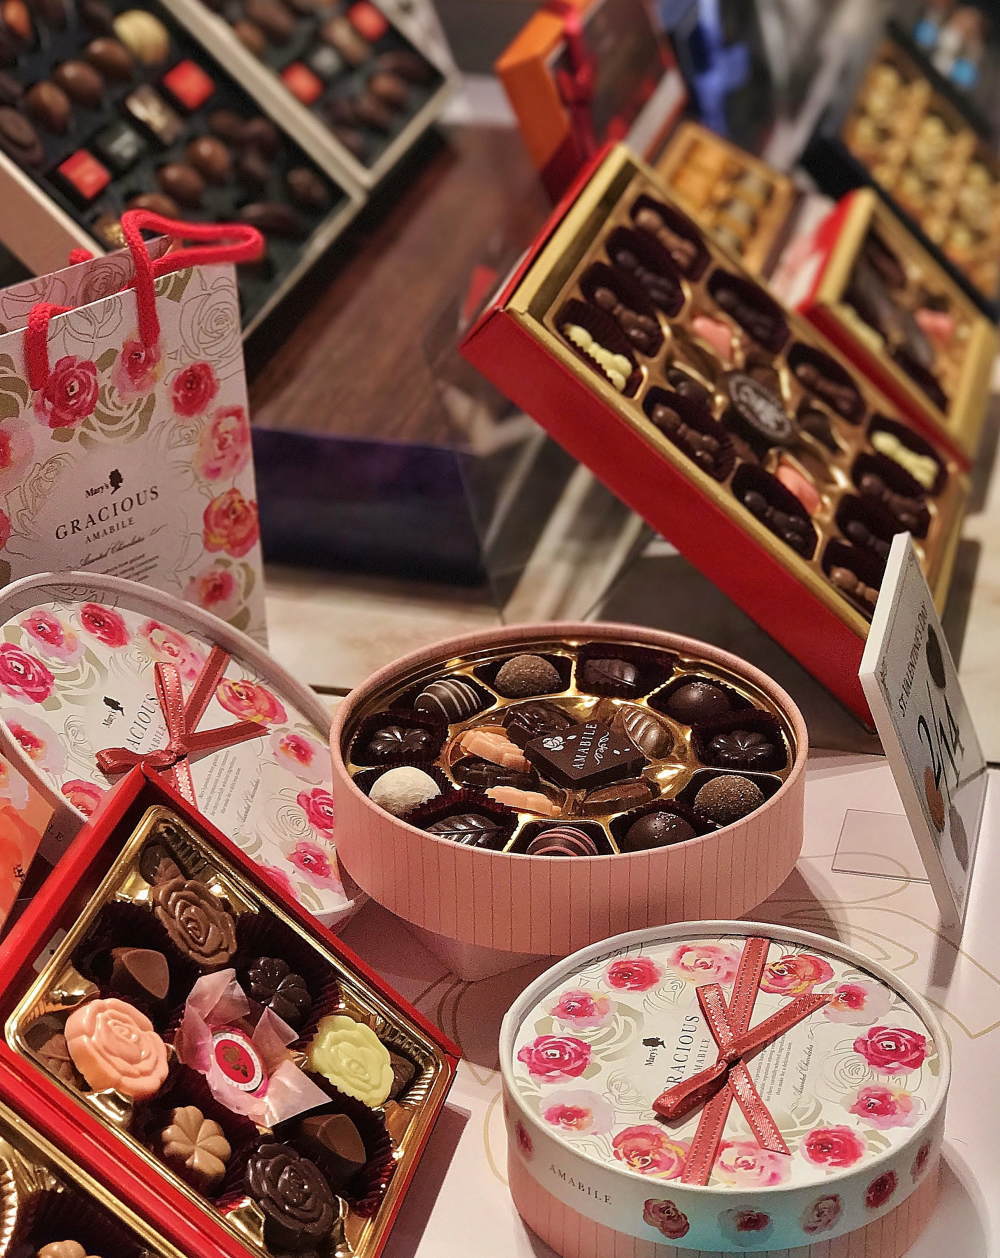 メリーチョコレート2018バレンタイン新商品